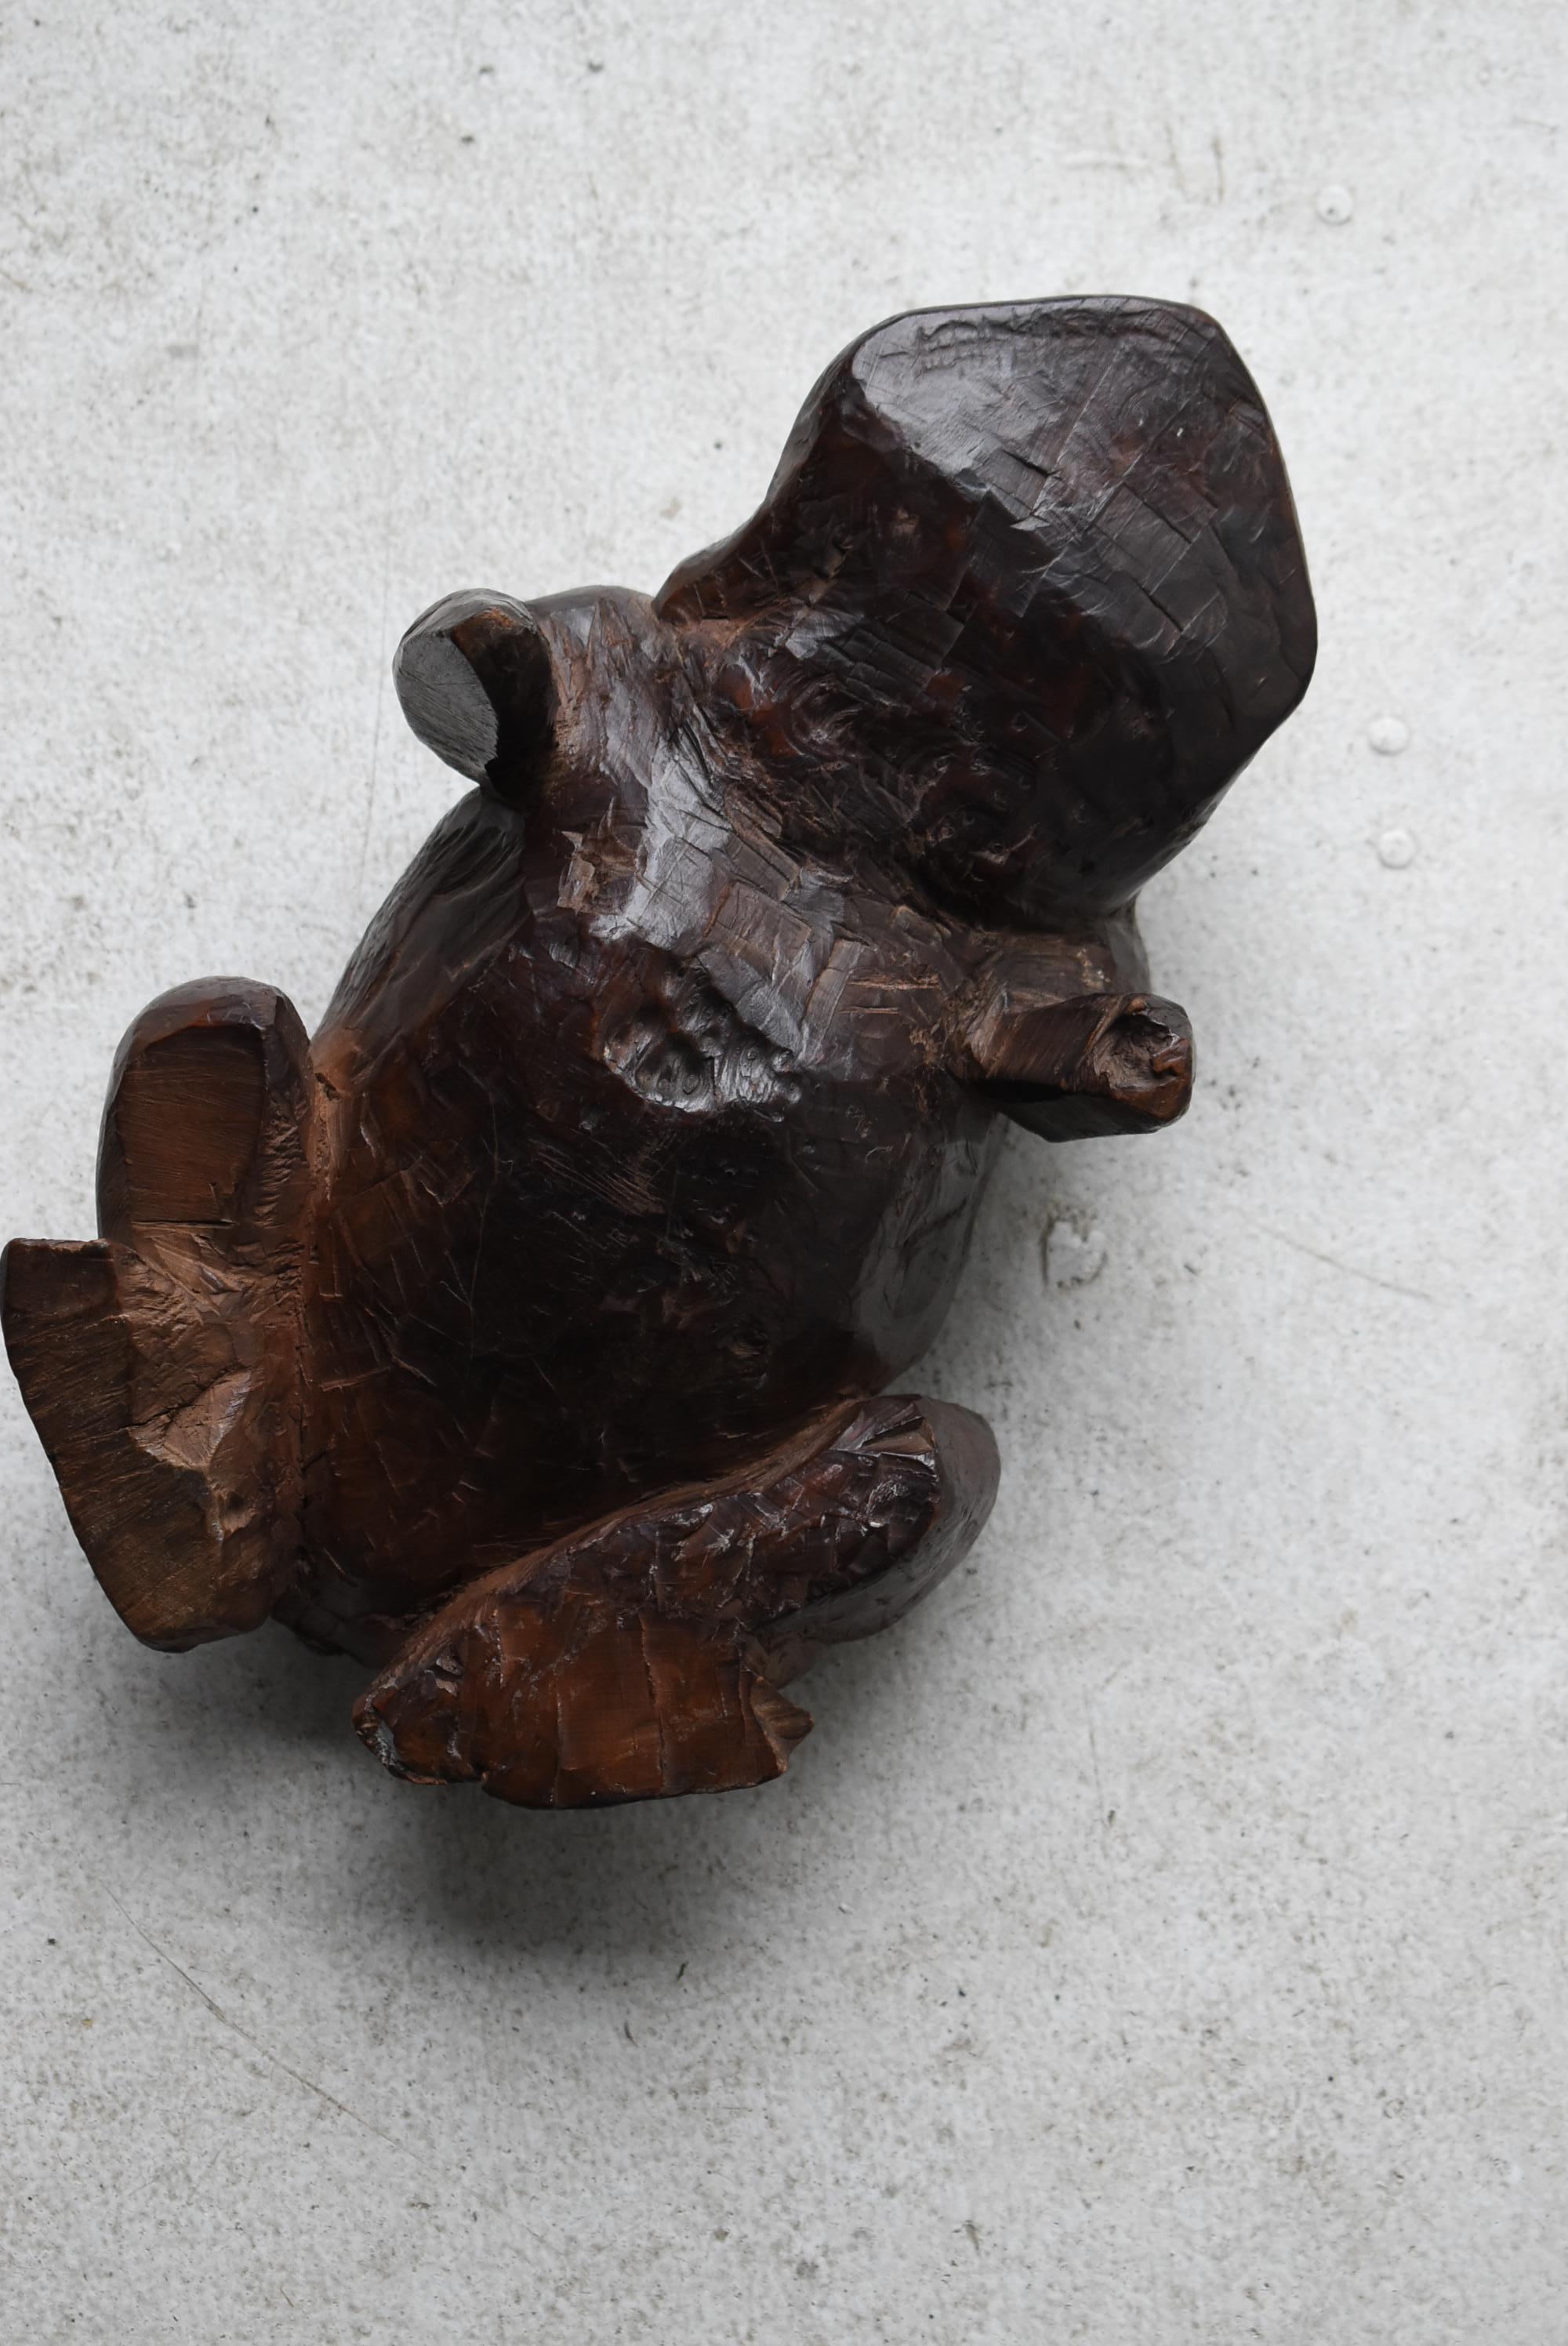 Japanese Antique Wood Carving Frog 1900s-1940s / Sculpture Wabi Sabi  For Sale 9